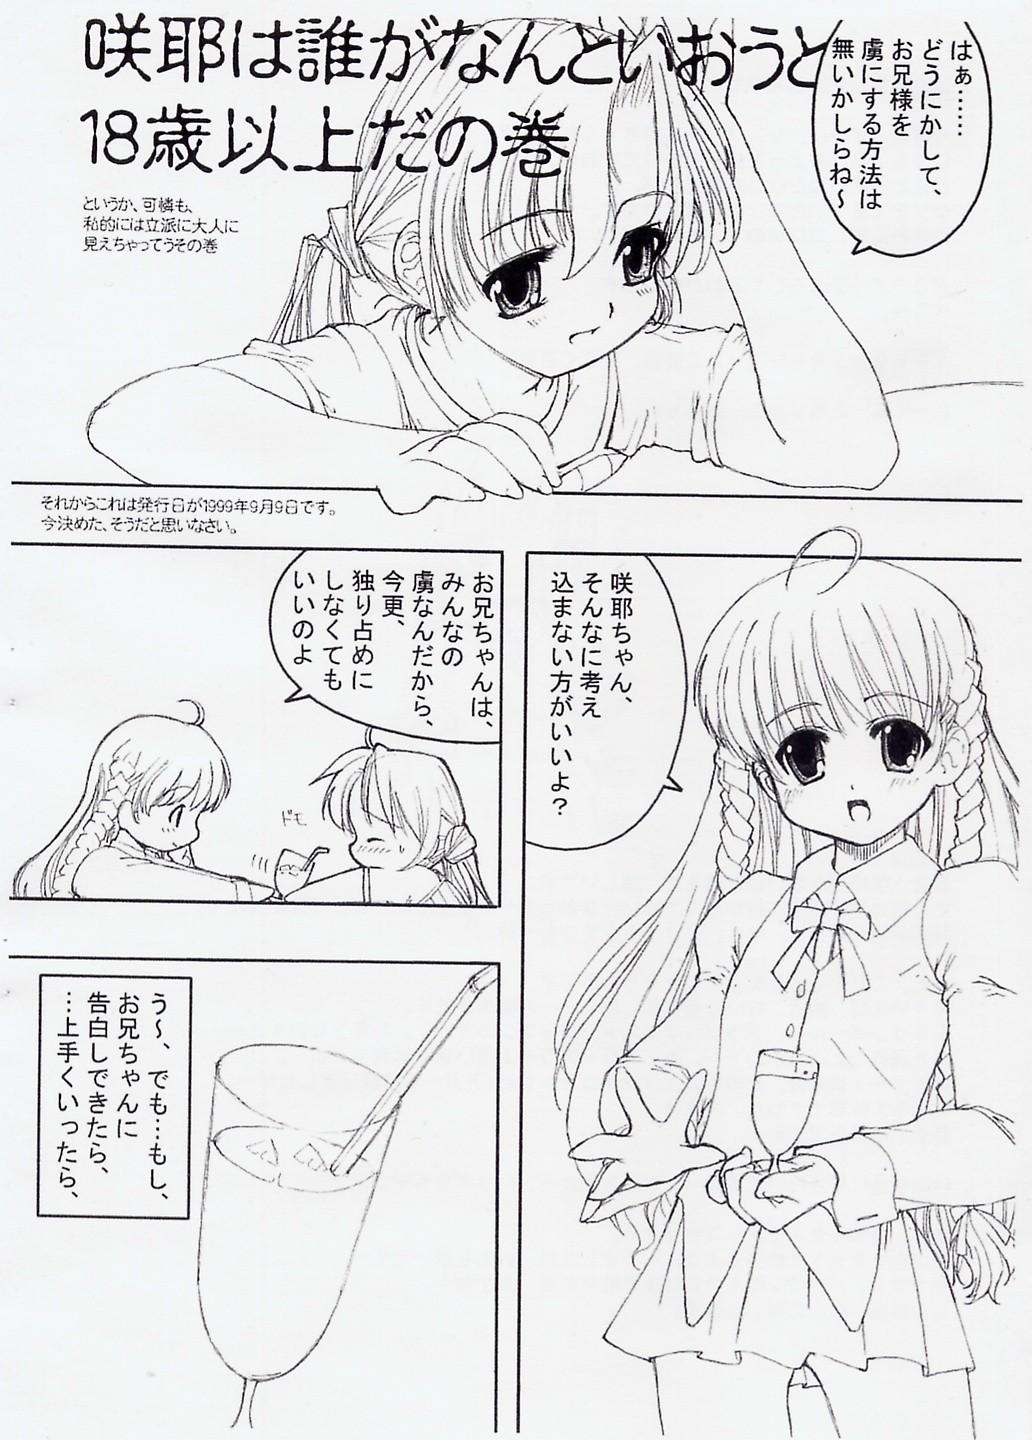 Playing Sakuya's Note - Sister princess Foreskin - Page 3